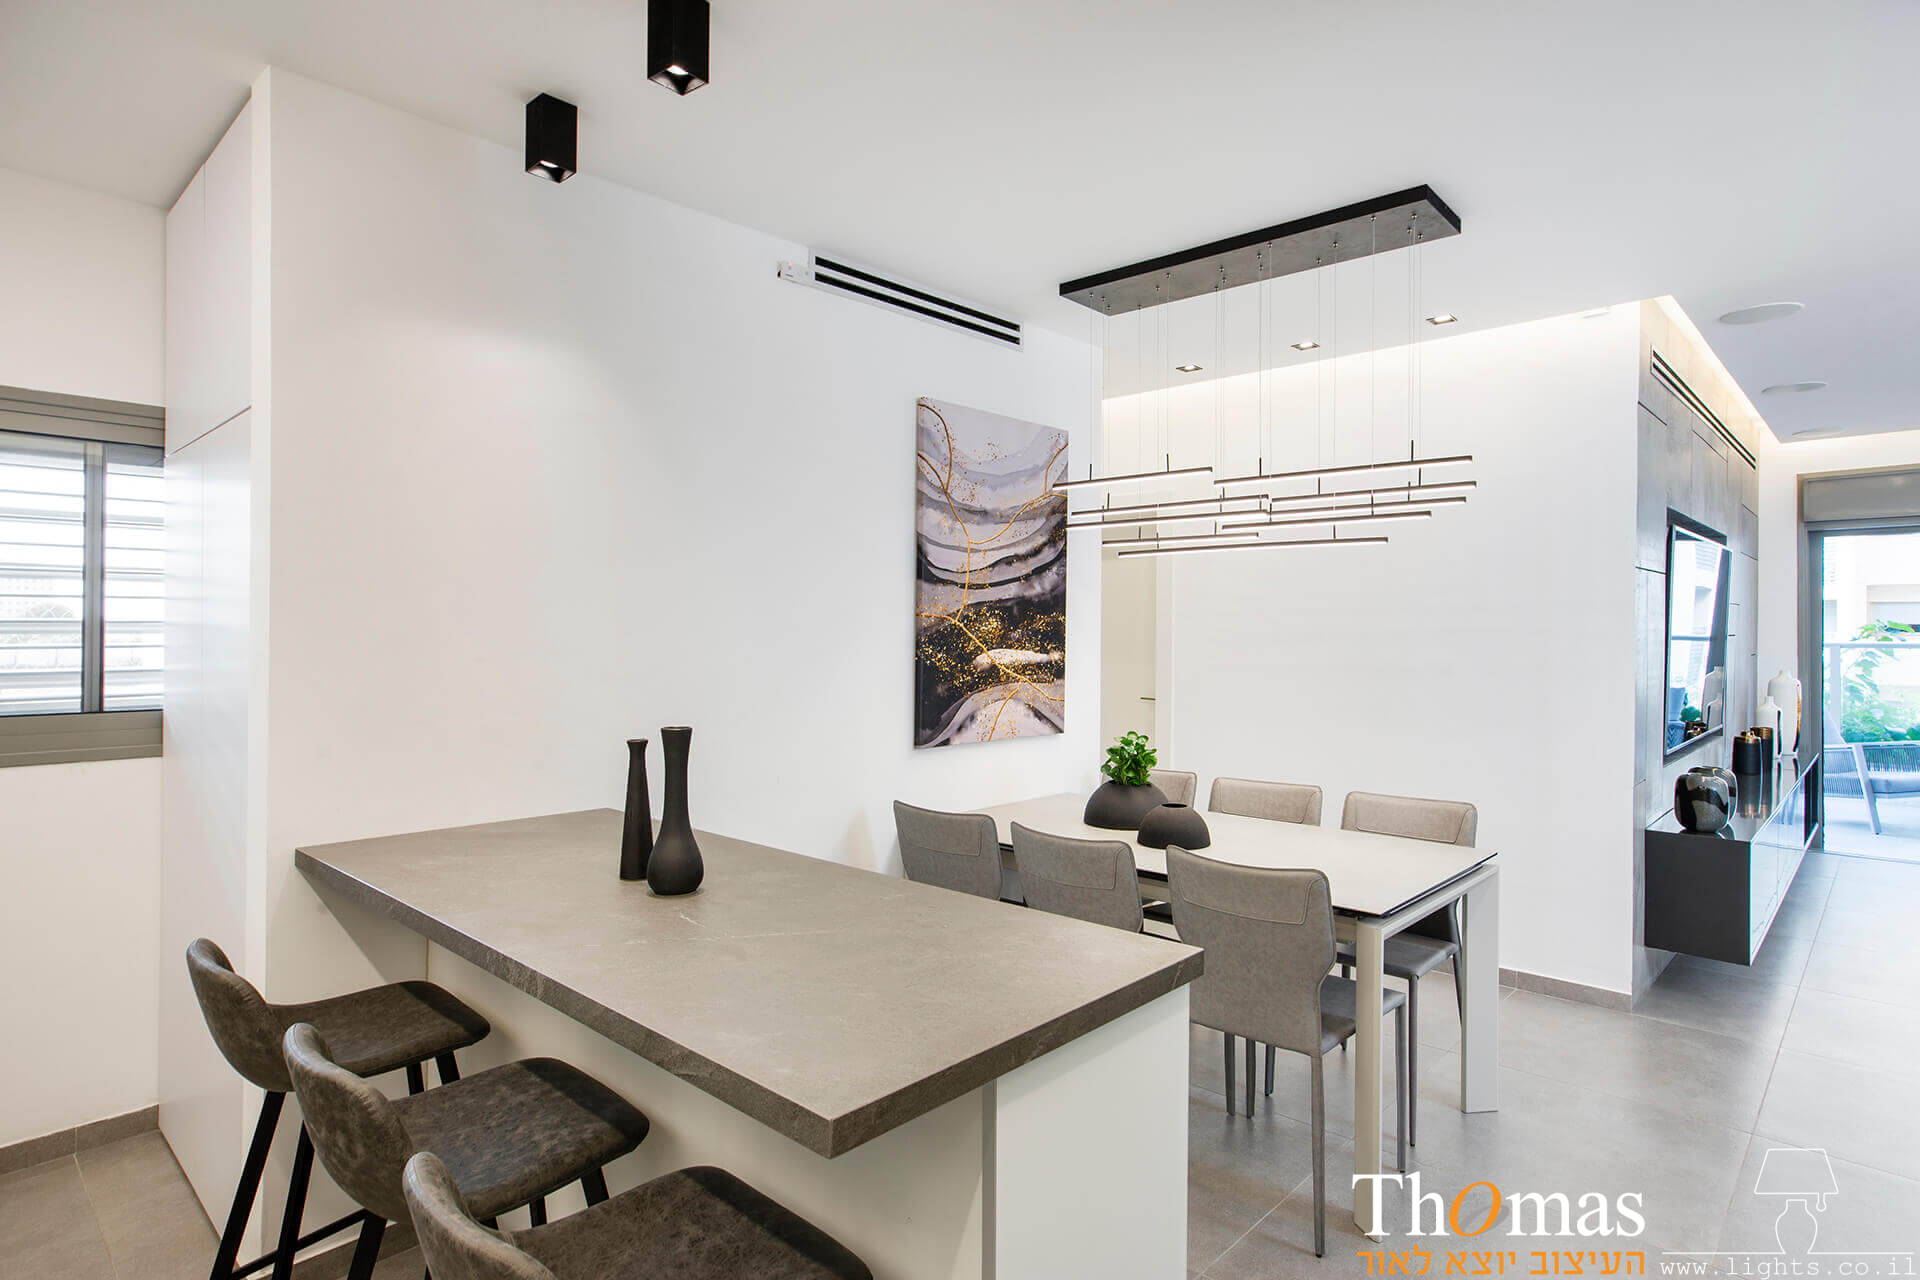 מנורה תלויה מעל פינת אוכל ושתי מנורות צמודות תקרה צילינדרים מעל דלפק במטבח